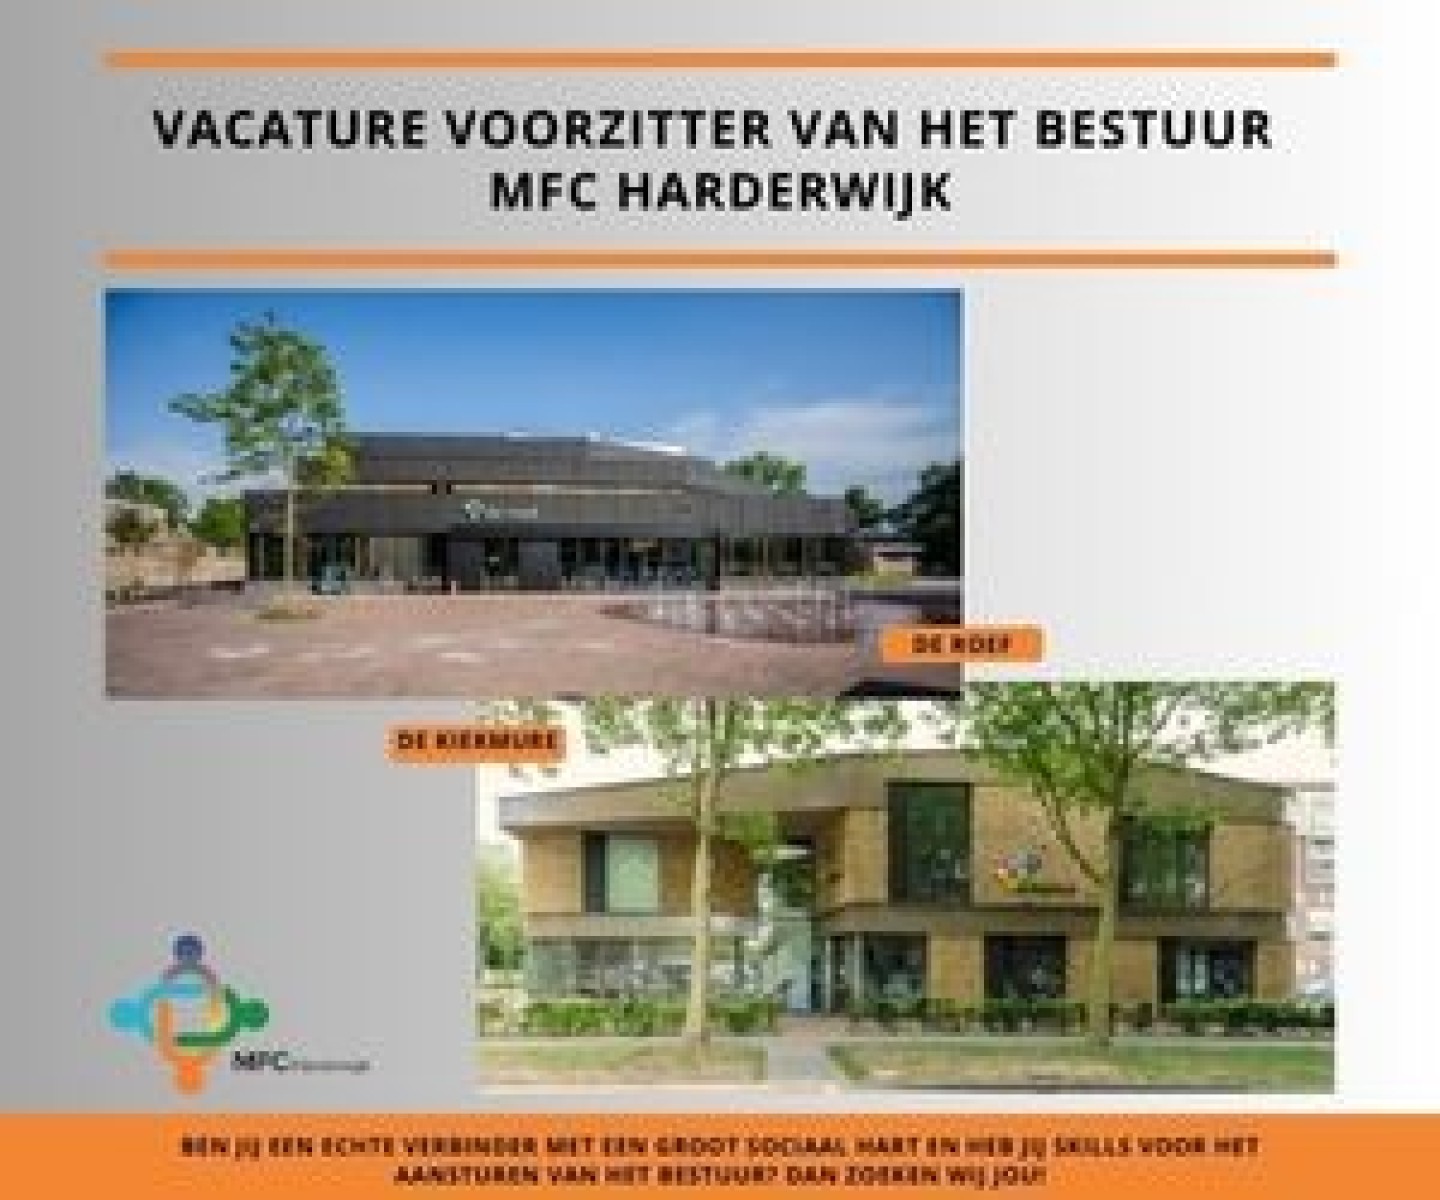 Vacature Voorzitter van het Bestuur MFC Harderwijk (1)